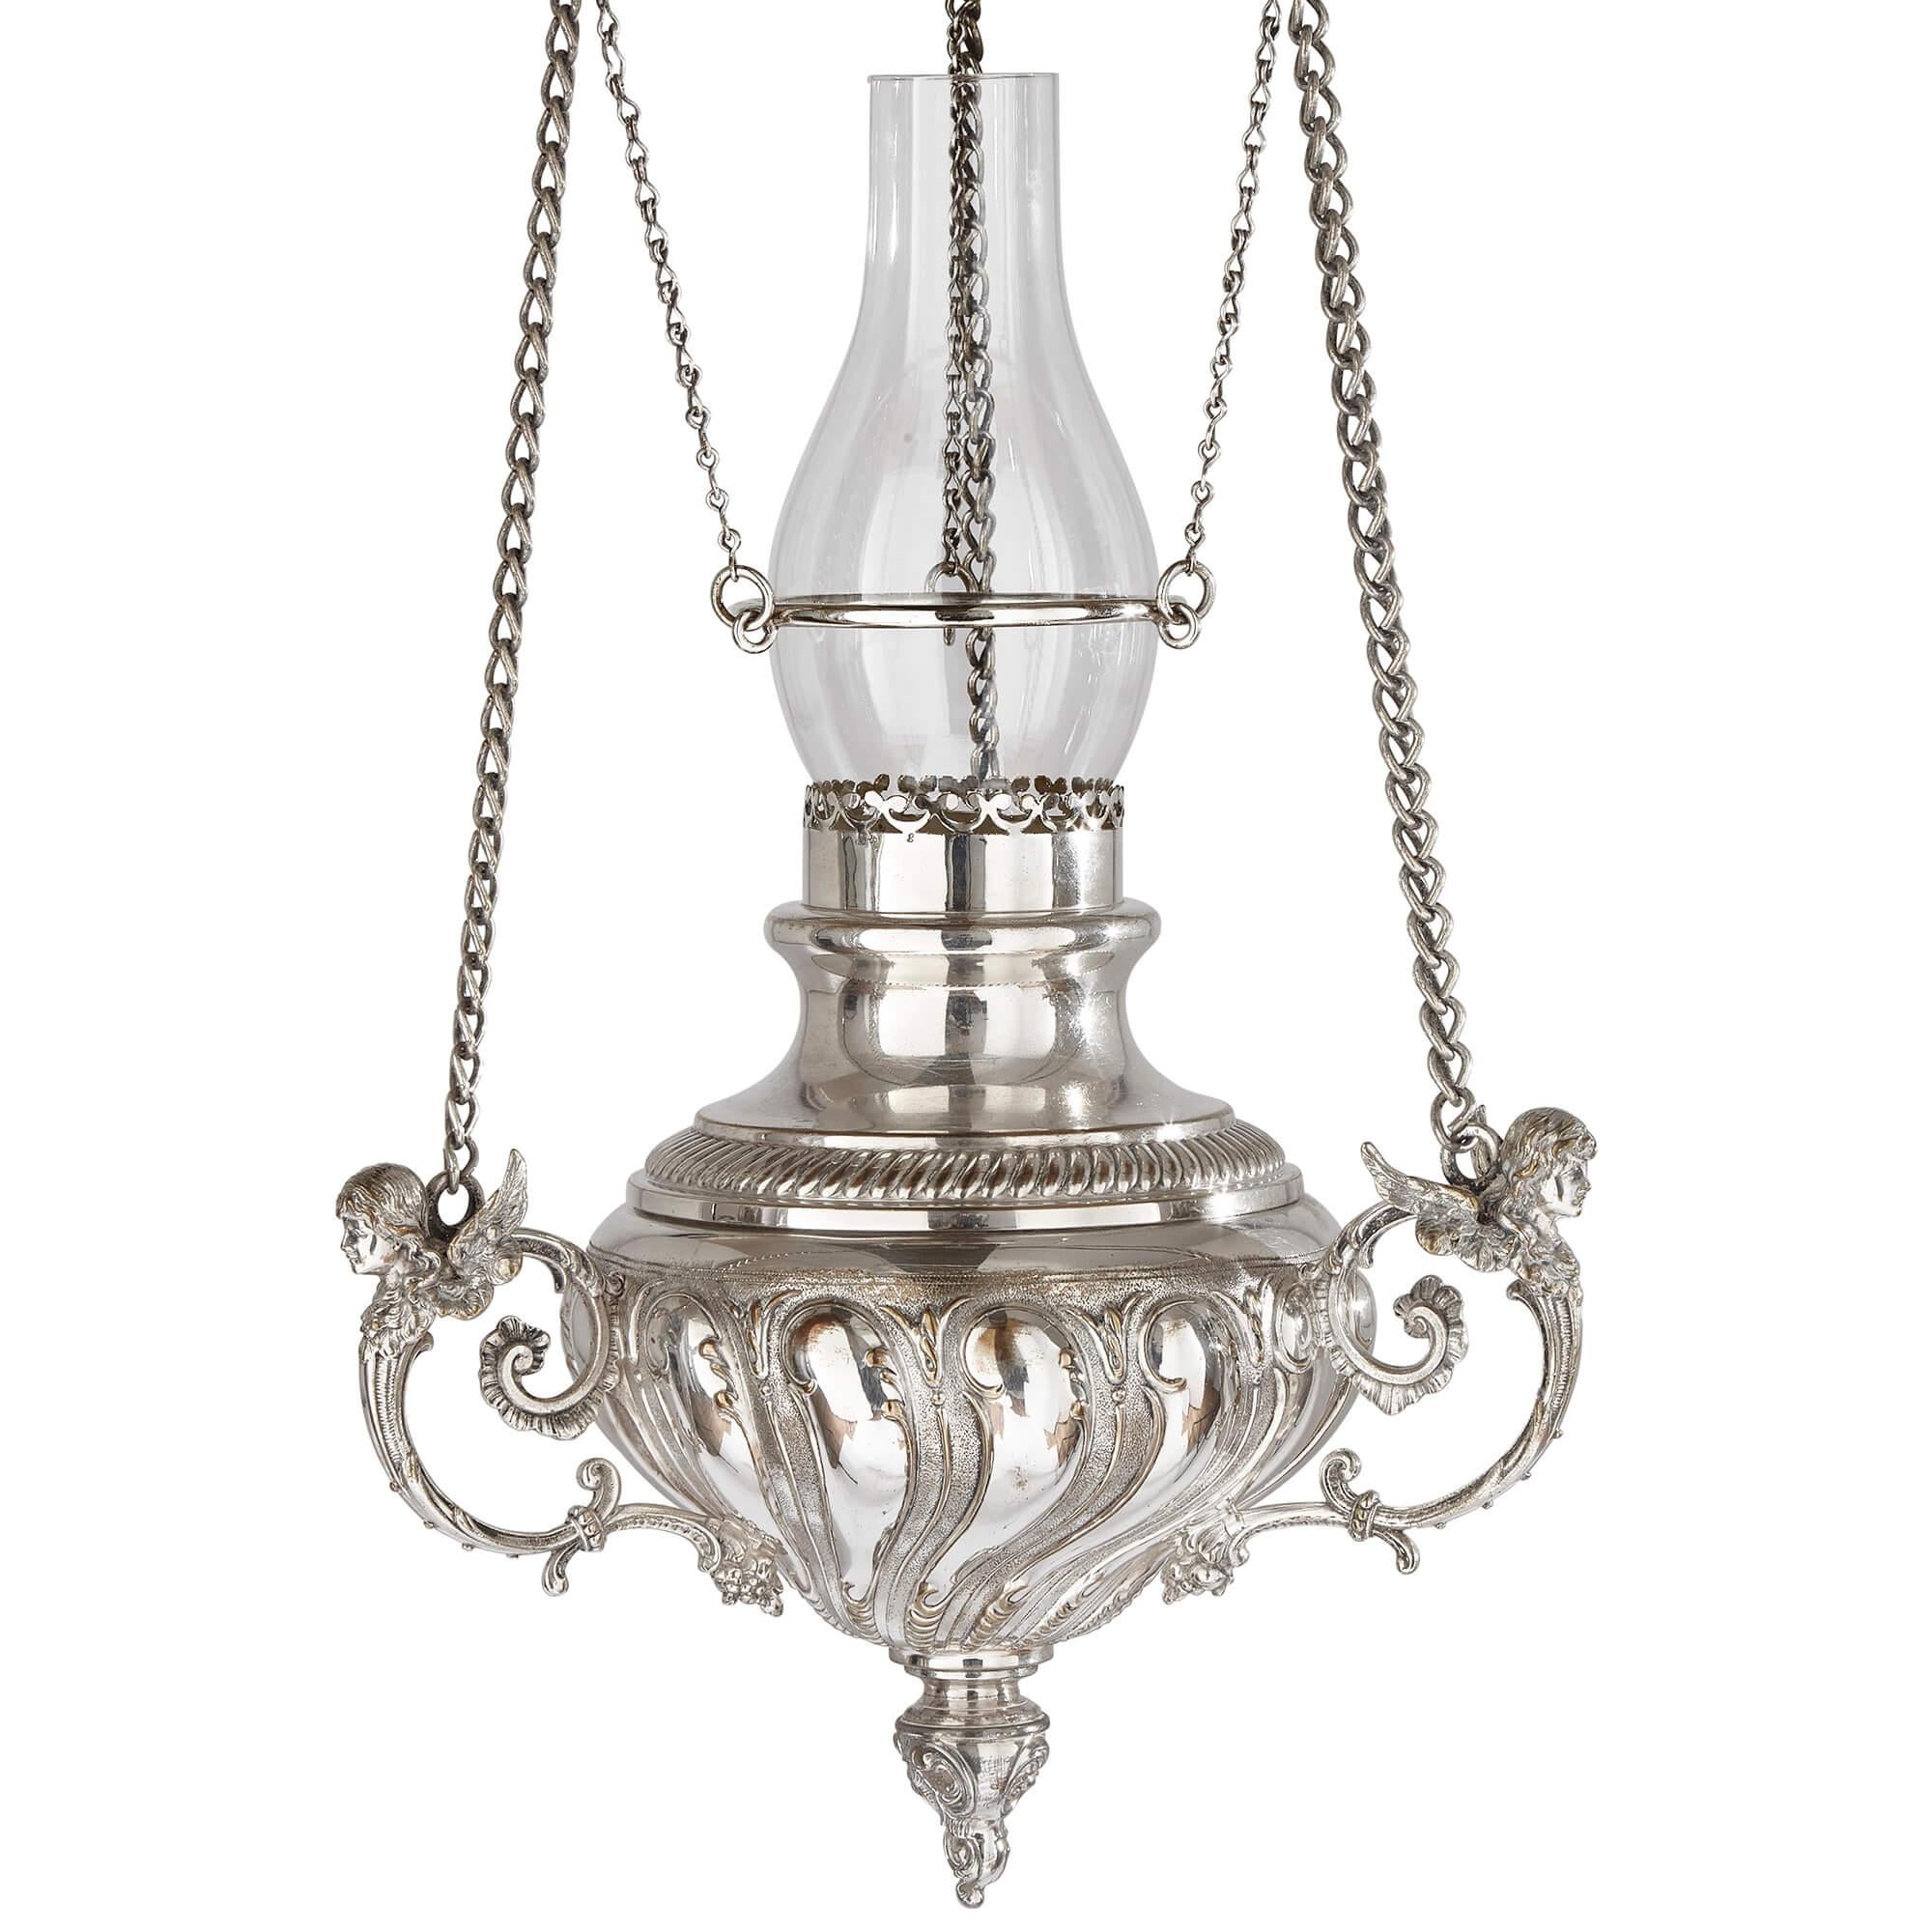 Grande lanterne suspendue allemande en métal argenté par WMF
Allemand, c.1920
Hauteur 90 cm, diamètre 24 cm

Constituée d'un fleuron rond et pointu à godrons suspendu par des chaînes en forme de ruban et surmonté d'un luminaire ouvert, cette pièce